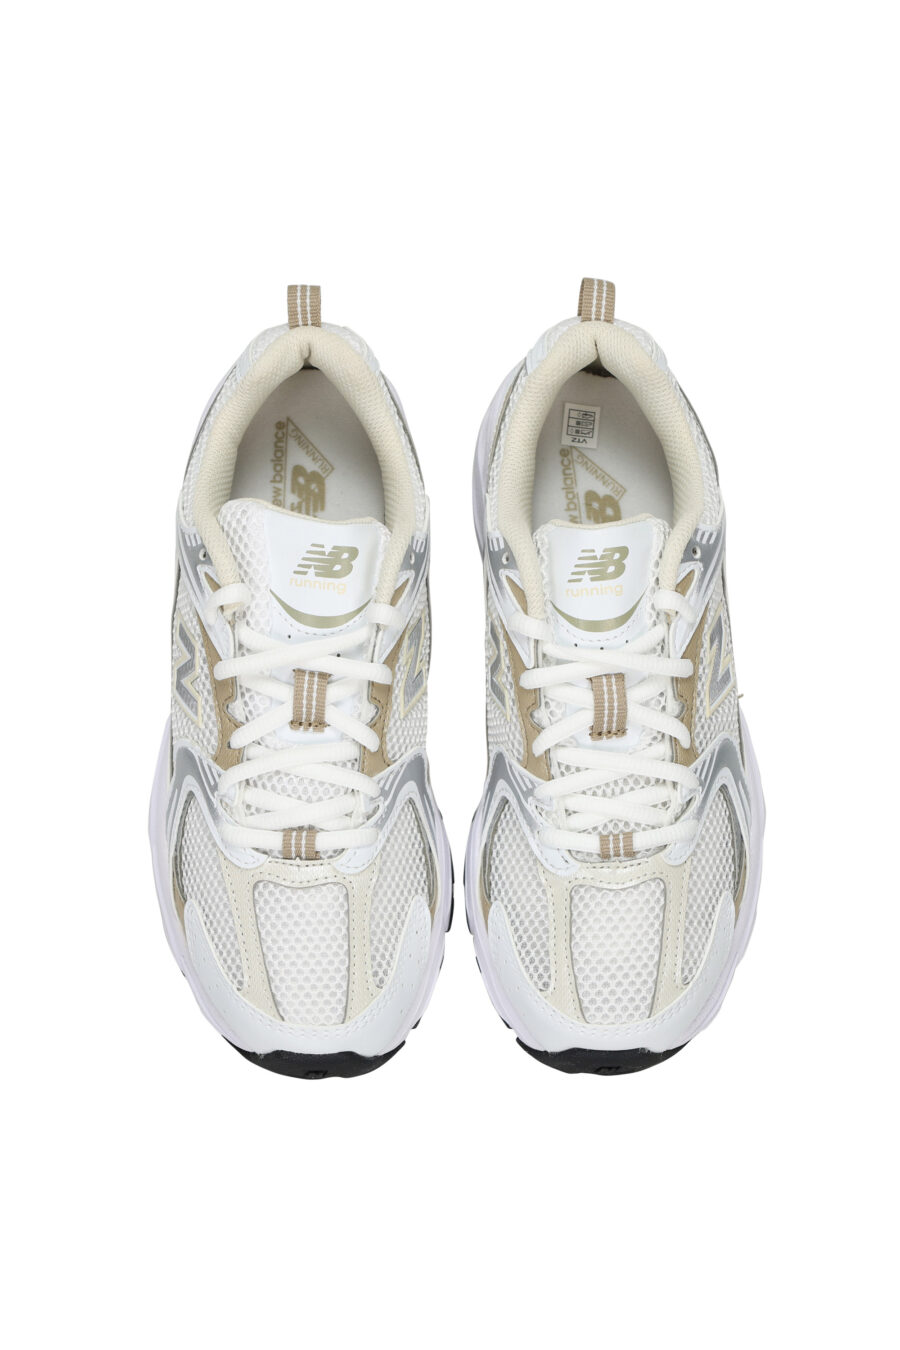 Zapatillas blancas con detalles dorados "530" y logo "N" blanco - 197375712635 4